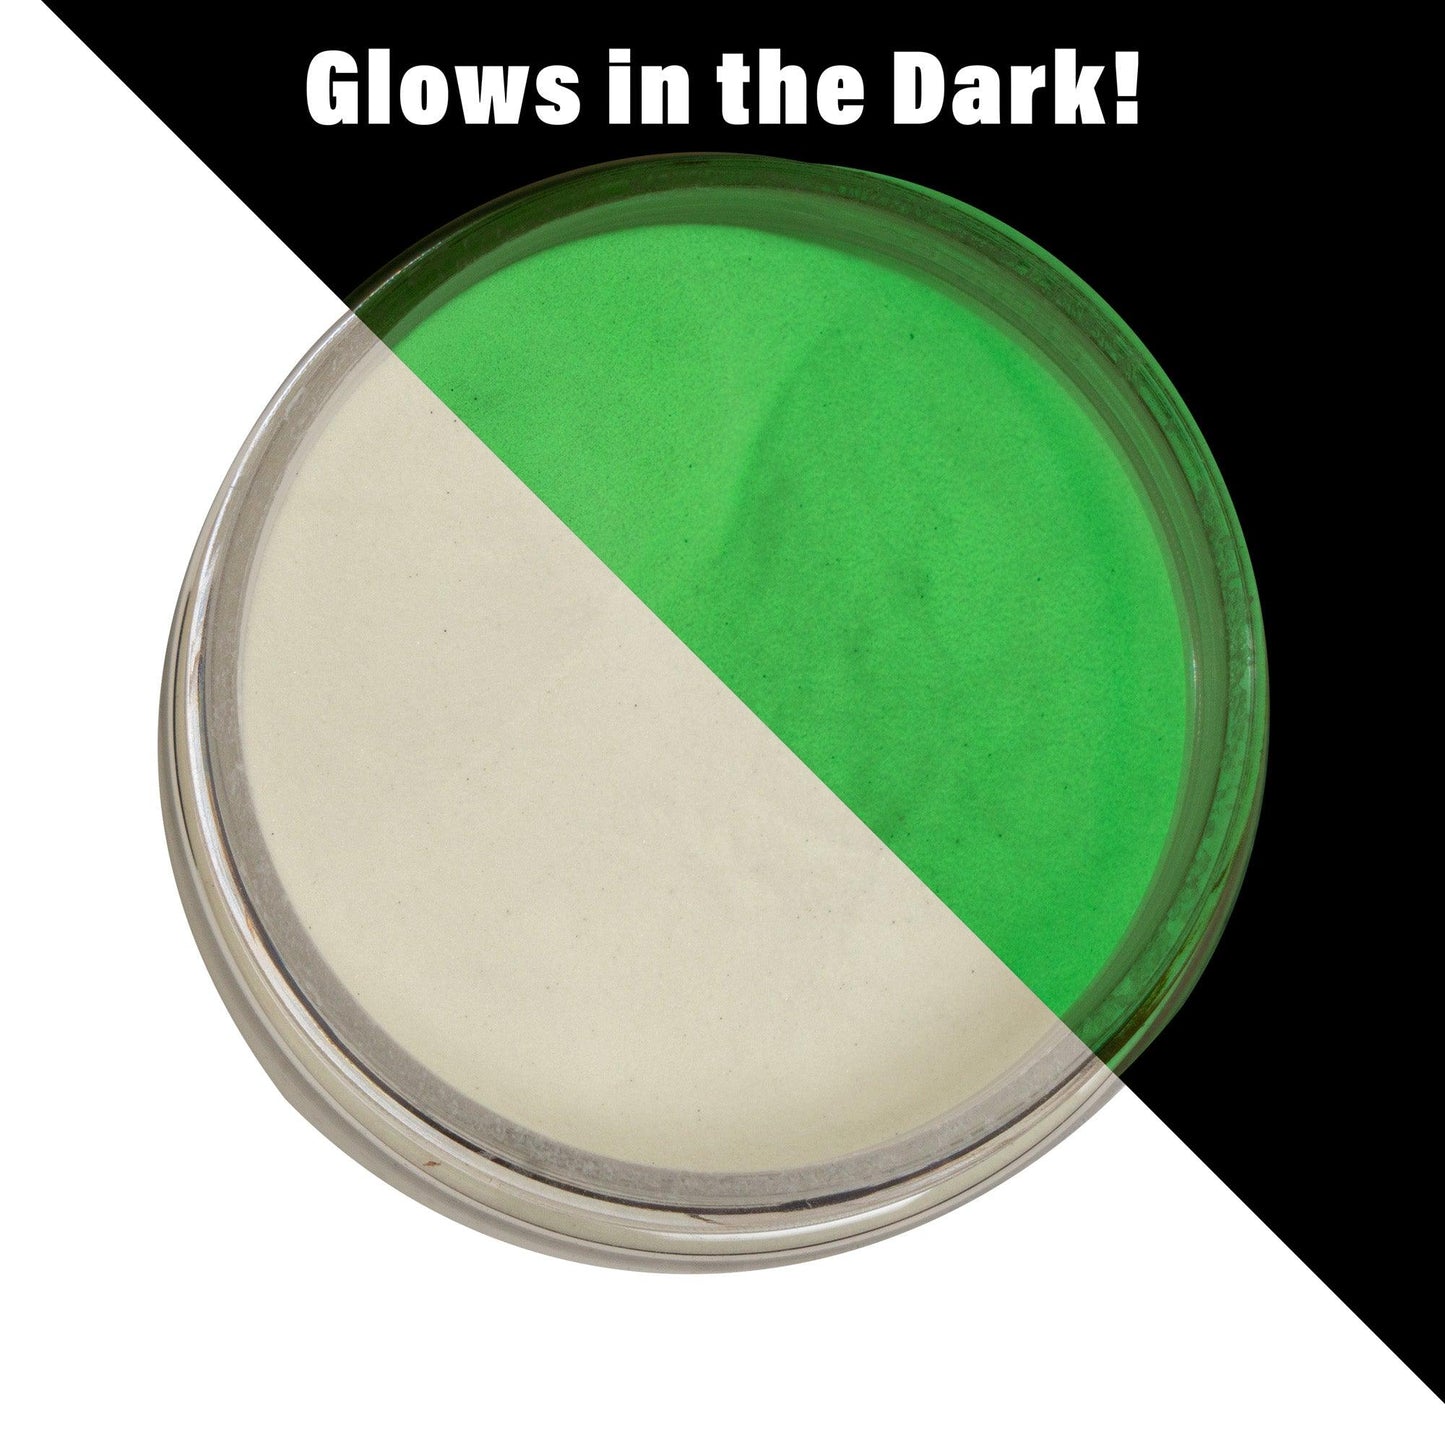 Firefly Glow Powder – MakerFlo Crafts